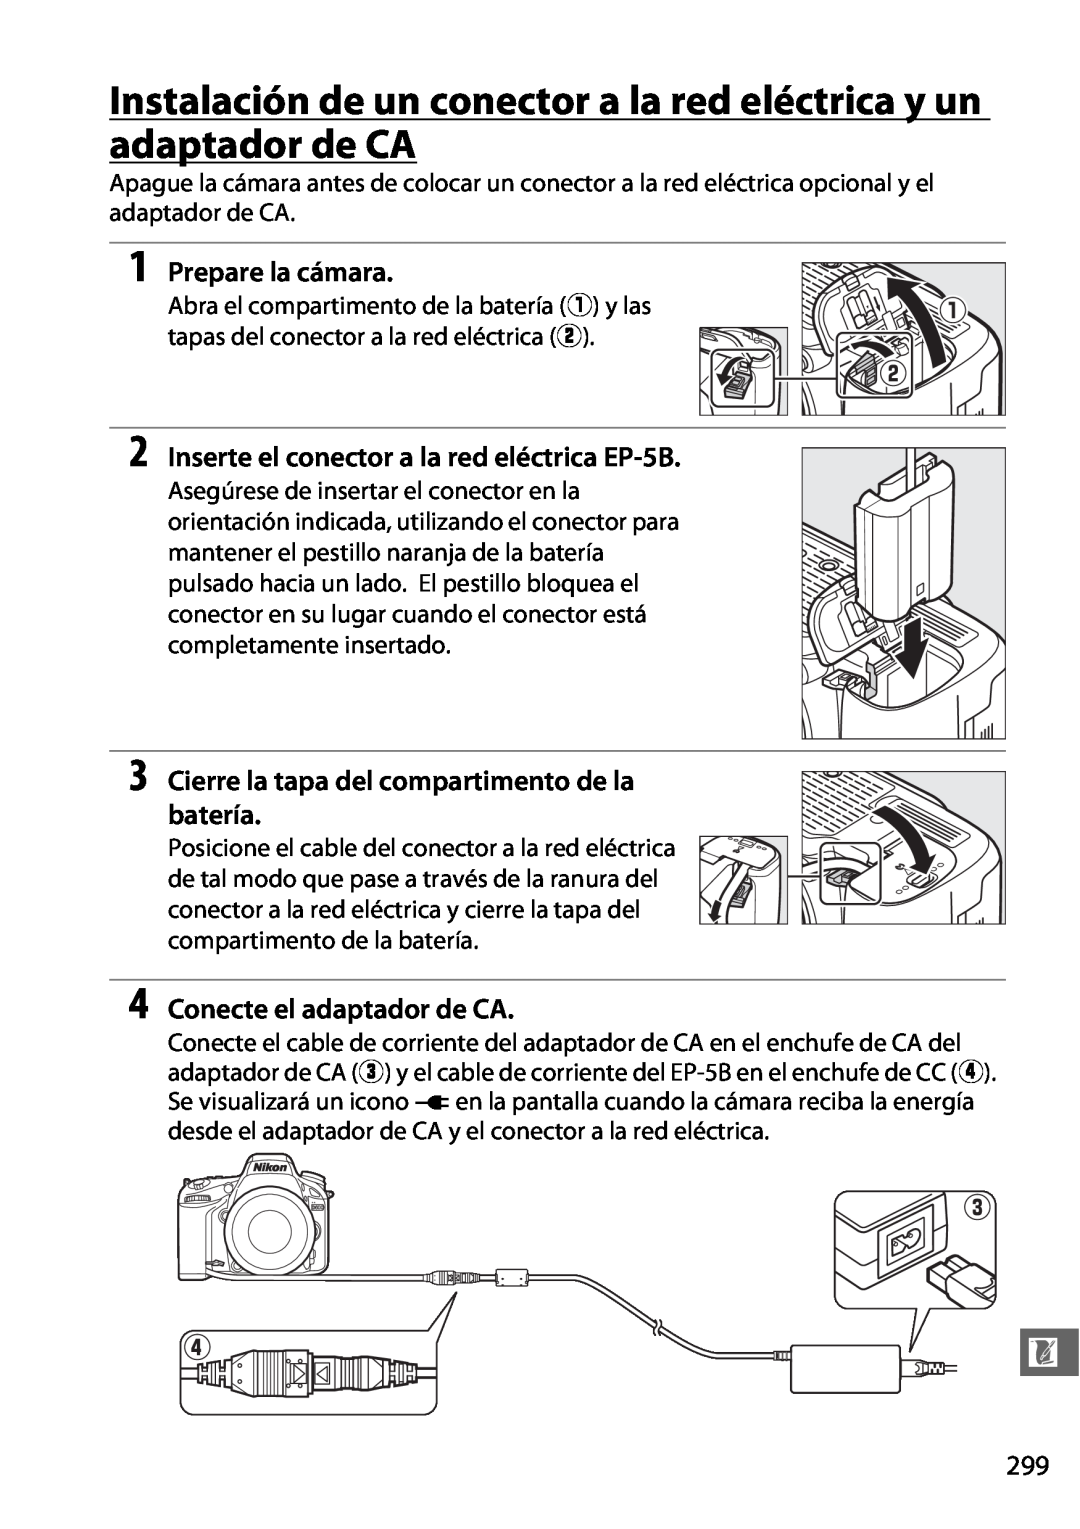 Nikon D600 manual Instalación de un conector a la red eléctrica y un adaptador de CA, Prepare la cámara 